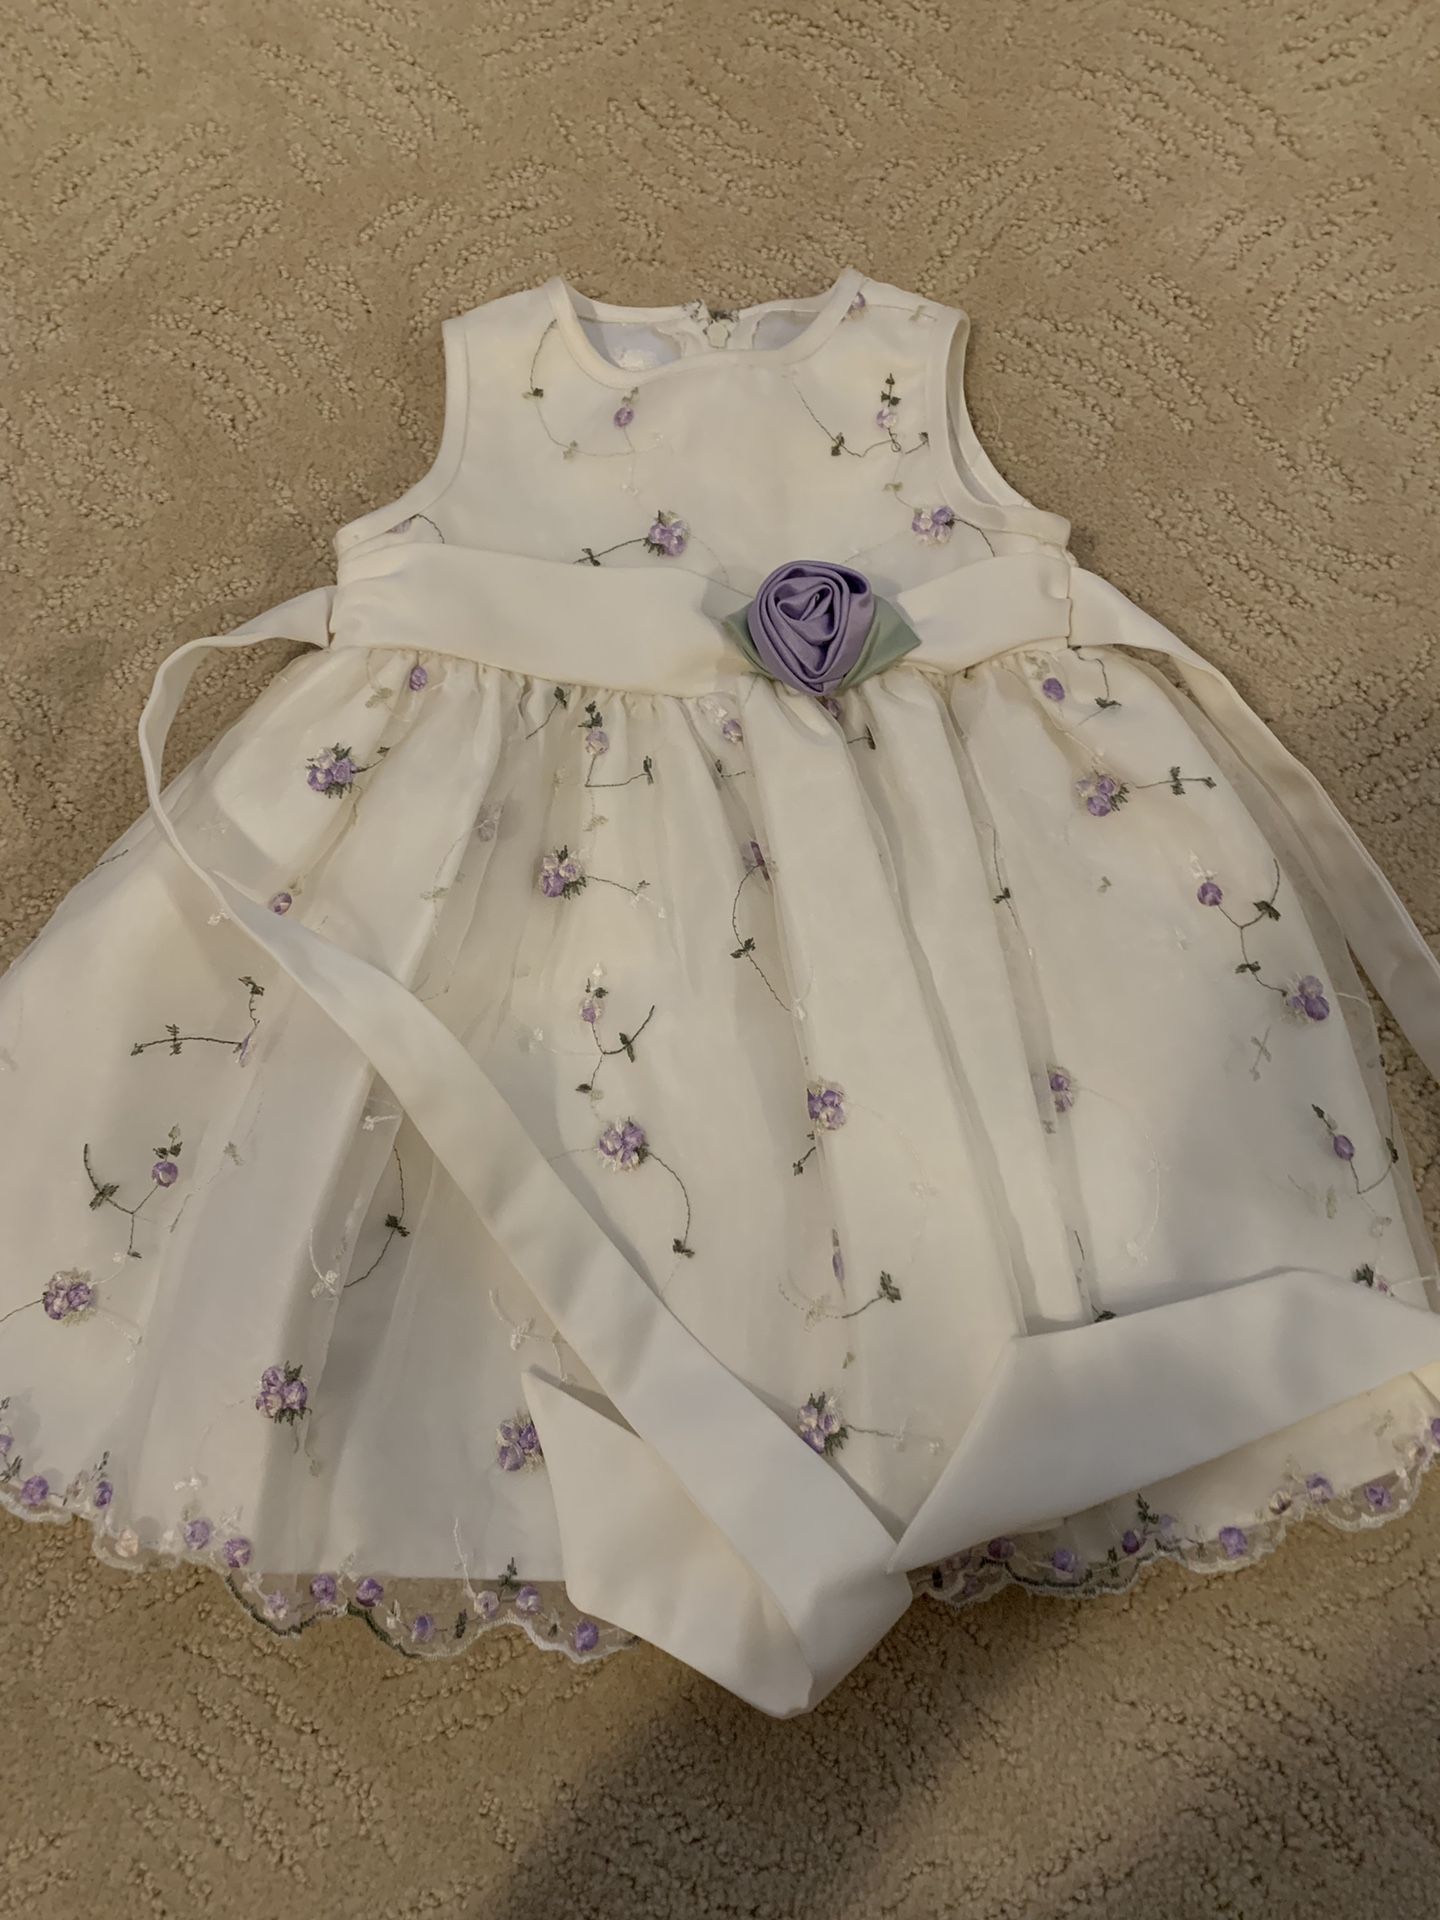 Flower girl purple white dress - 18 mo